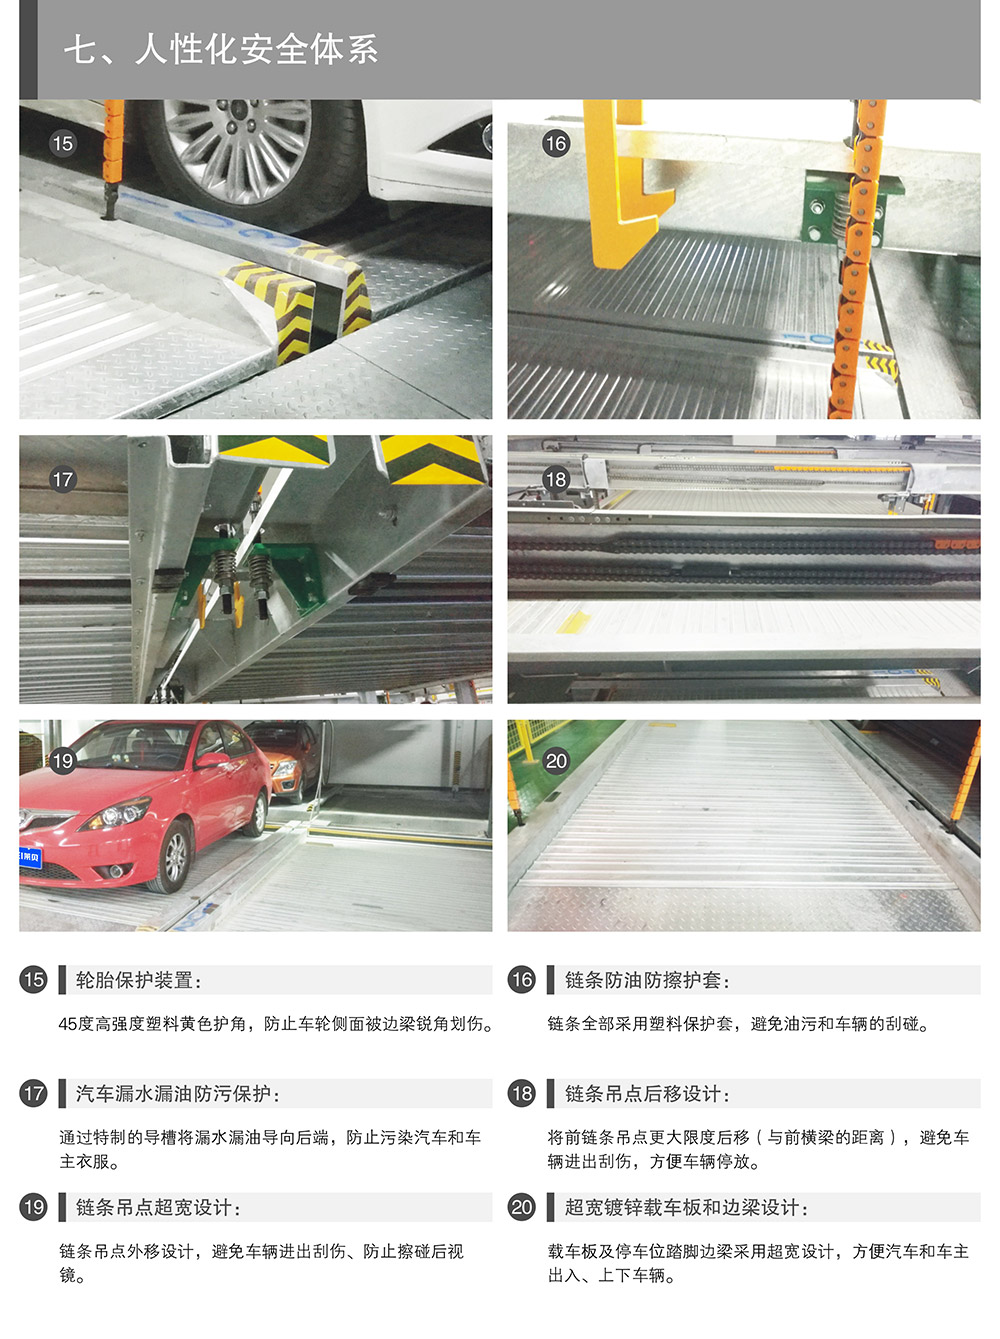 重庆负一正二地坑PSH3D1三层升降横移立体停车设备人性化安全体系.jpg